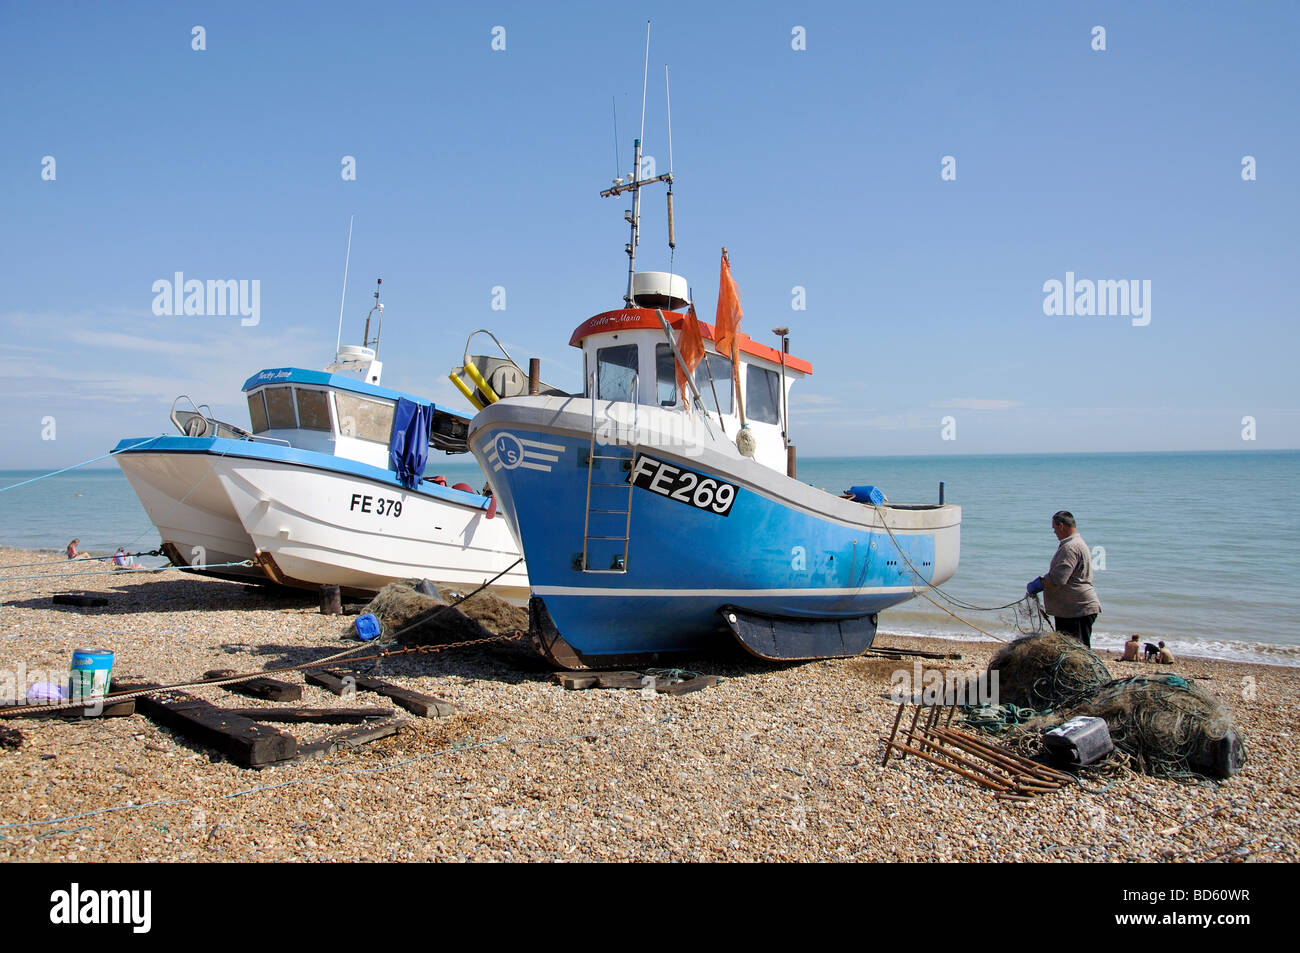 Bateaux de pêche sur la plage, Hythe, dans le Kent, Angleterre, Royaume-Uni Banque D'Images